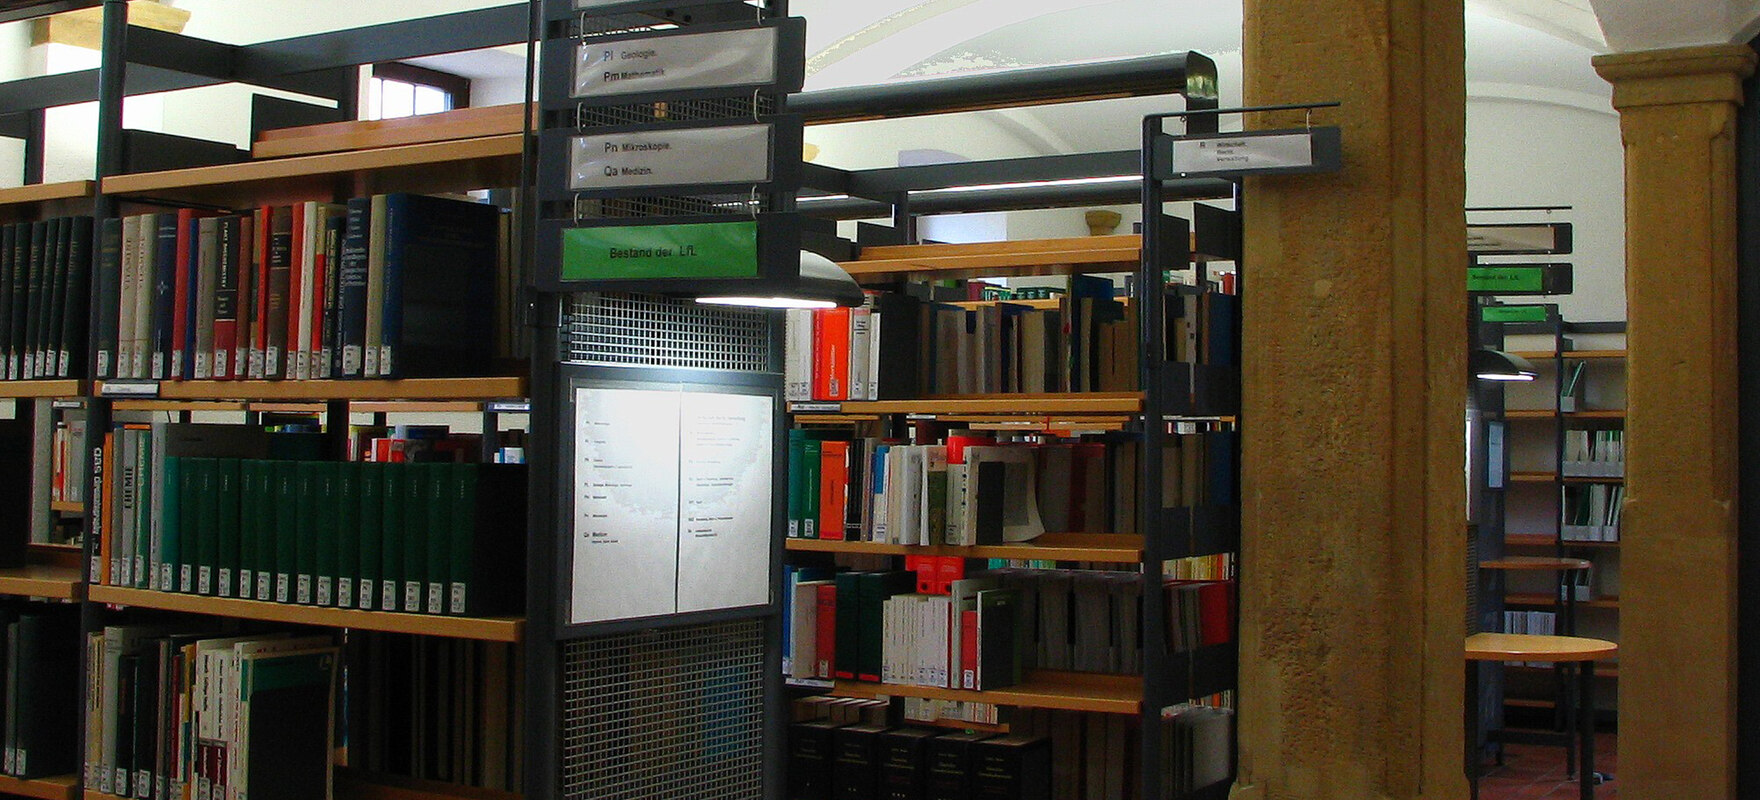 Einblick in die Bibliothek mit beschrifteten Bücherregalen aus Metall und Holz.